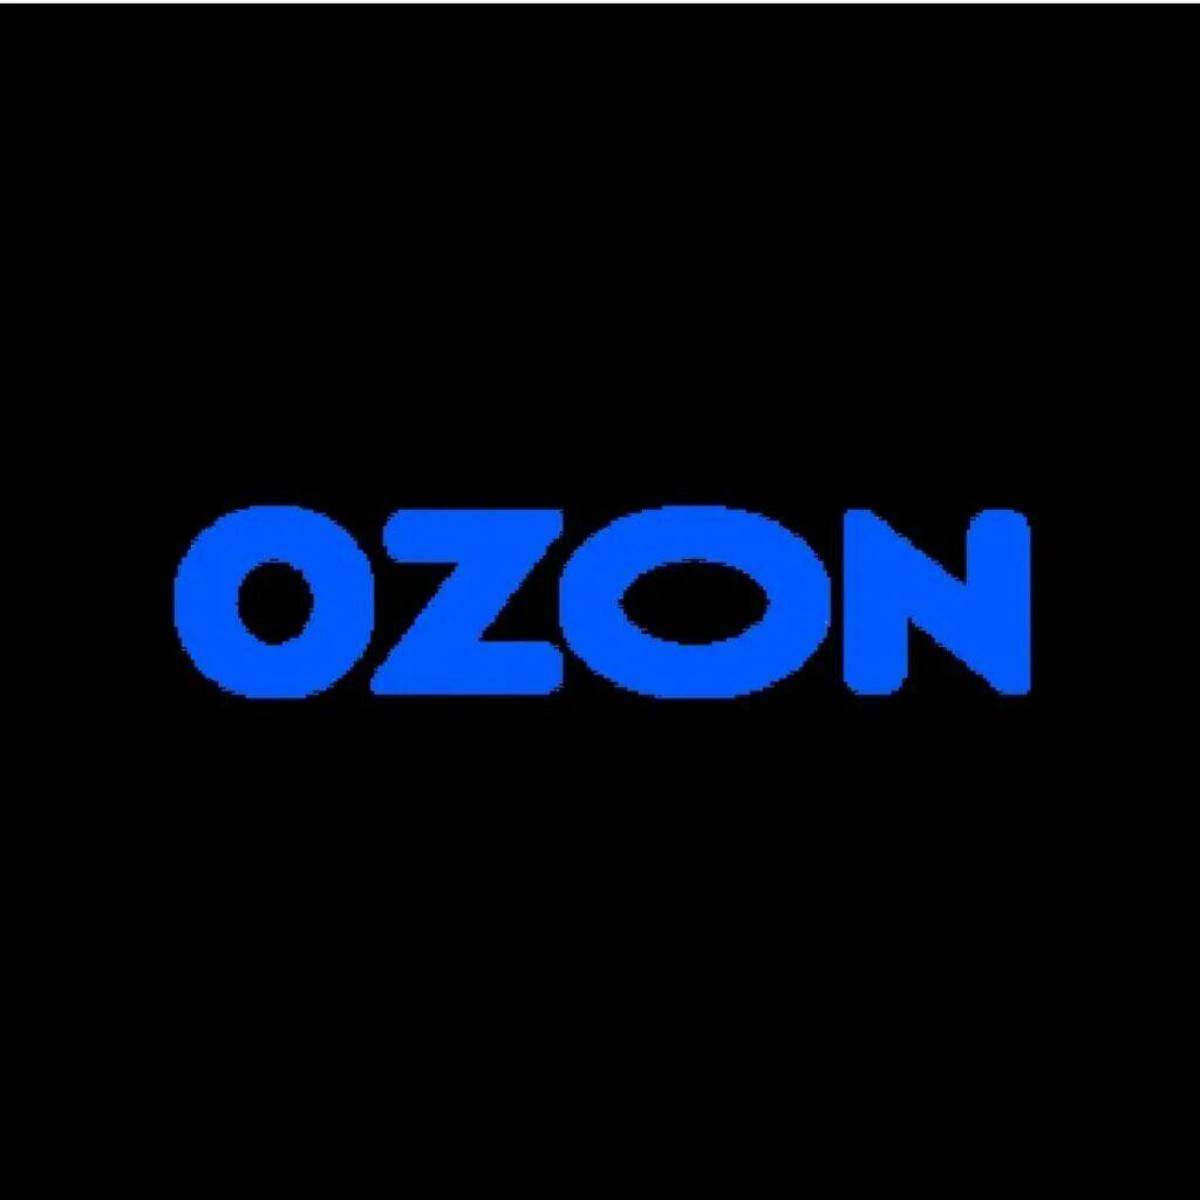 Озон картинка логотип. OZON. OZON логотип. Логотип Озон на черном фоне.